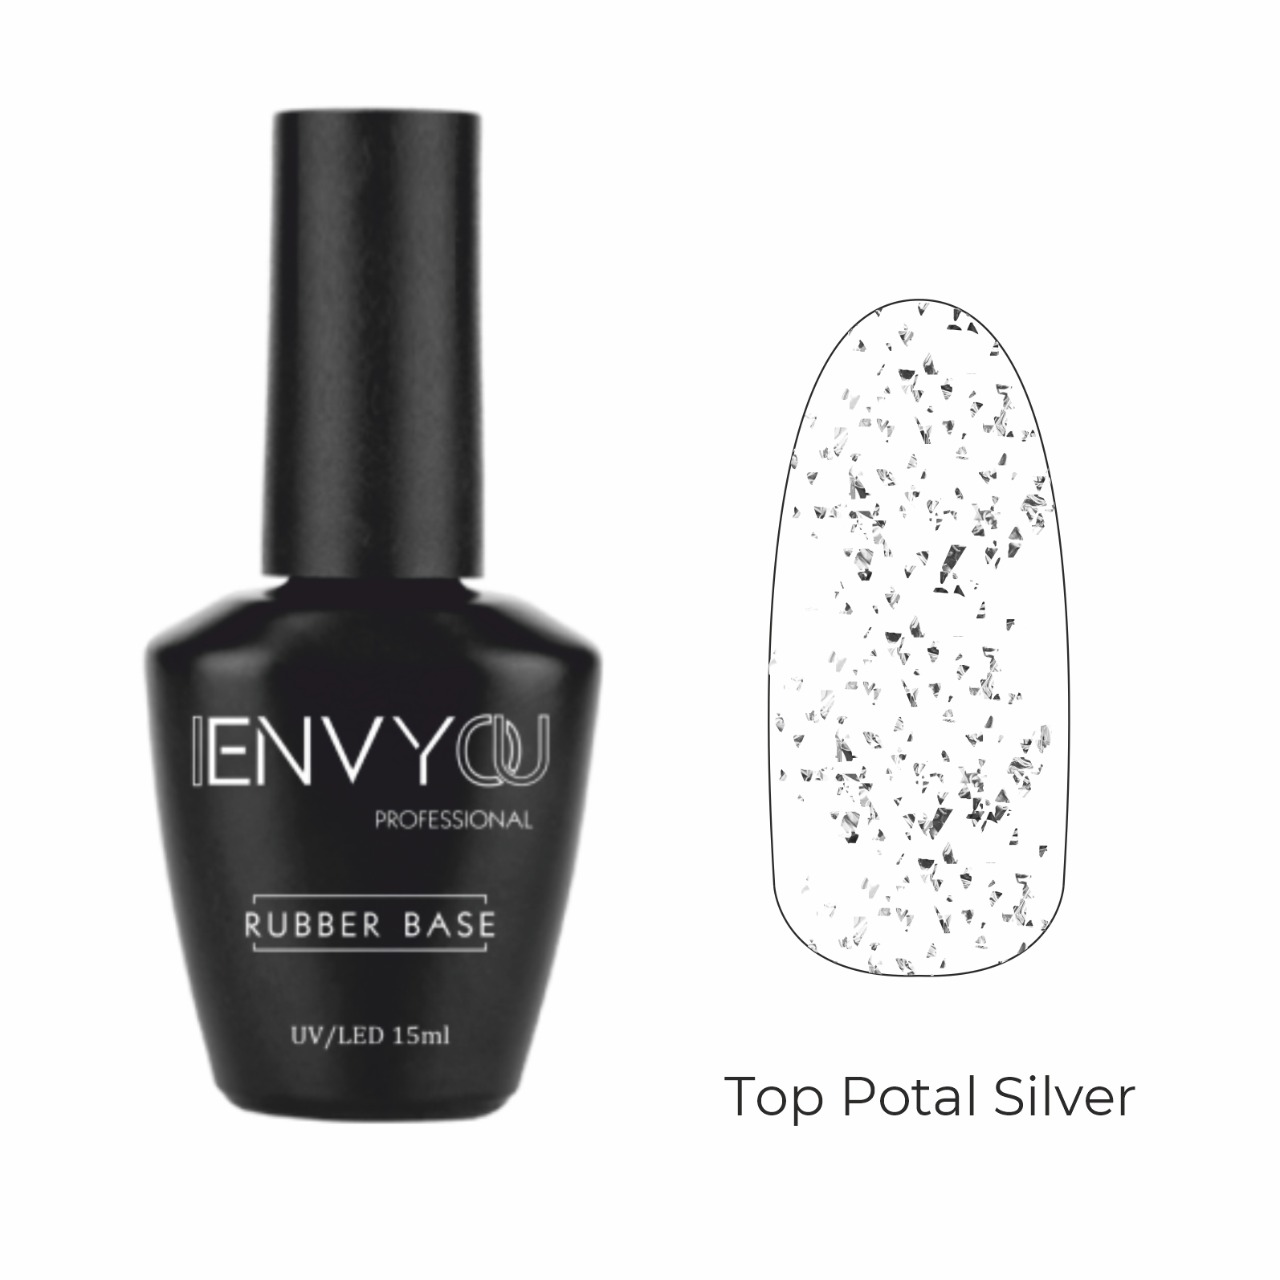 ENVY Top Potal Silver 15ml